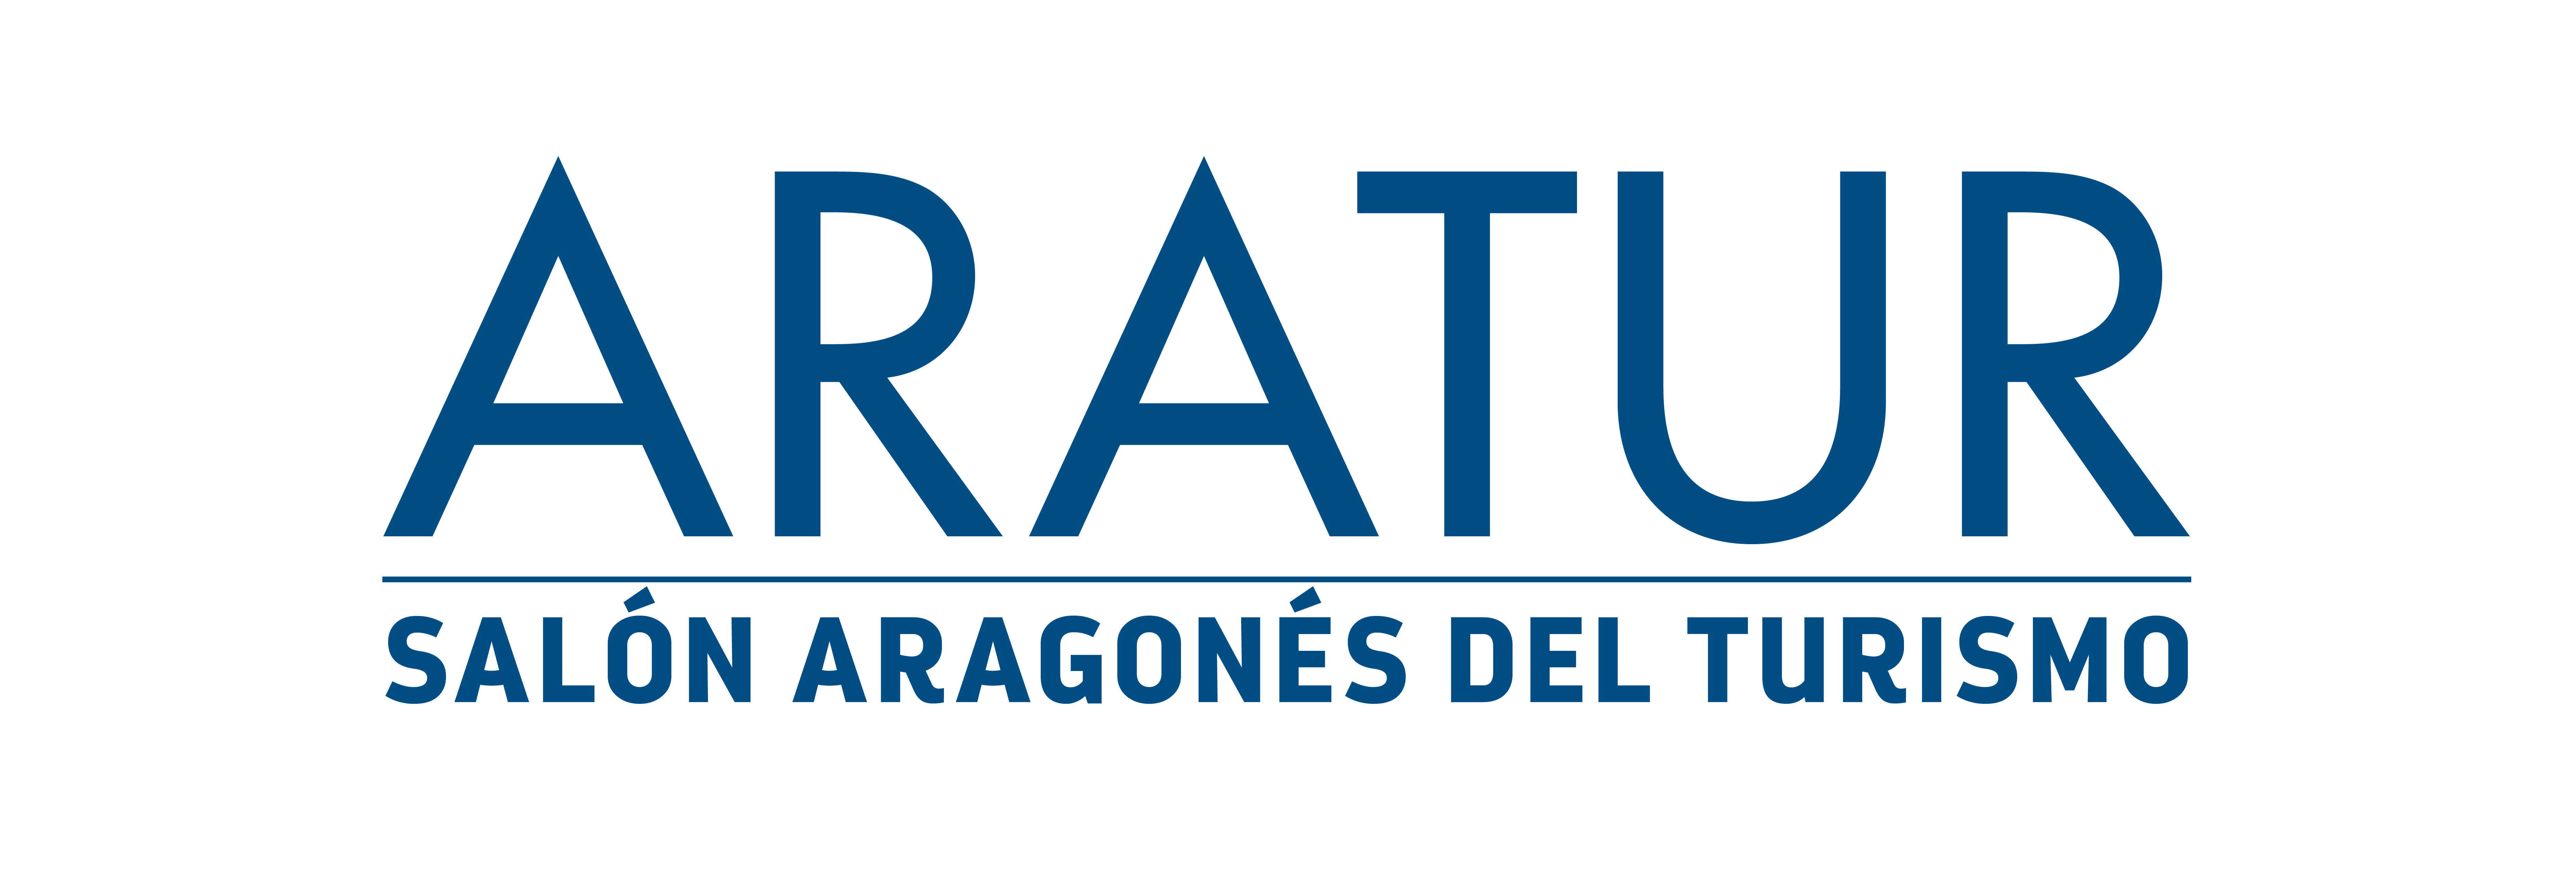 ARATUR 2019 - Palacio de Congresos de Zaragoza